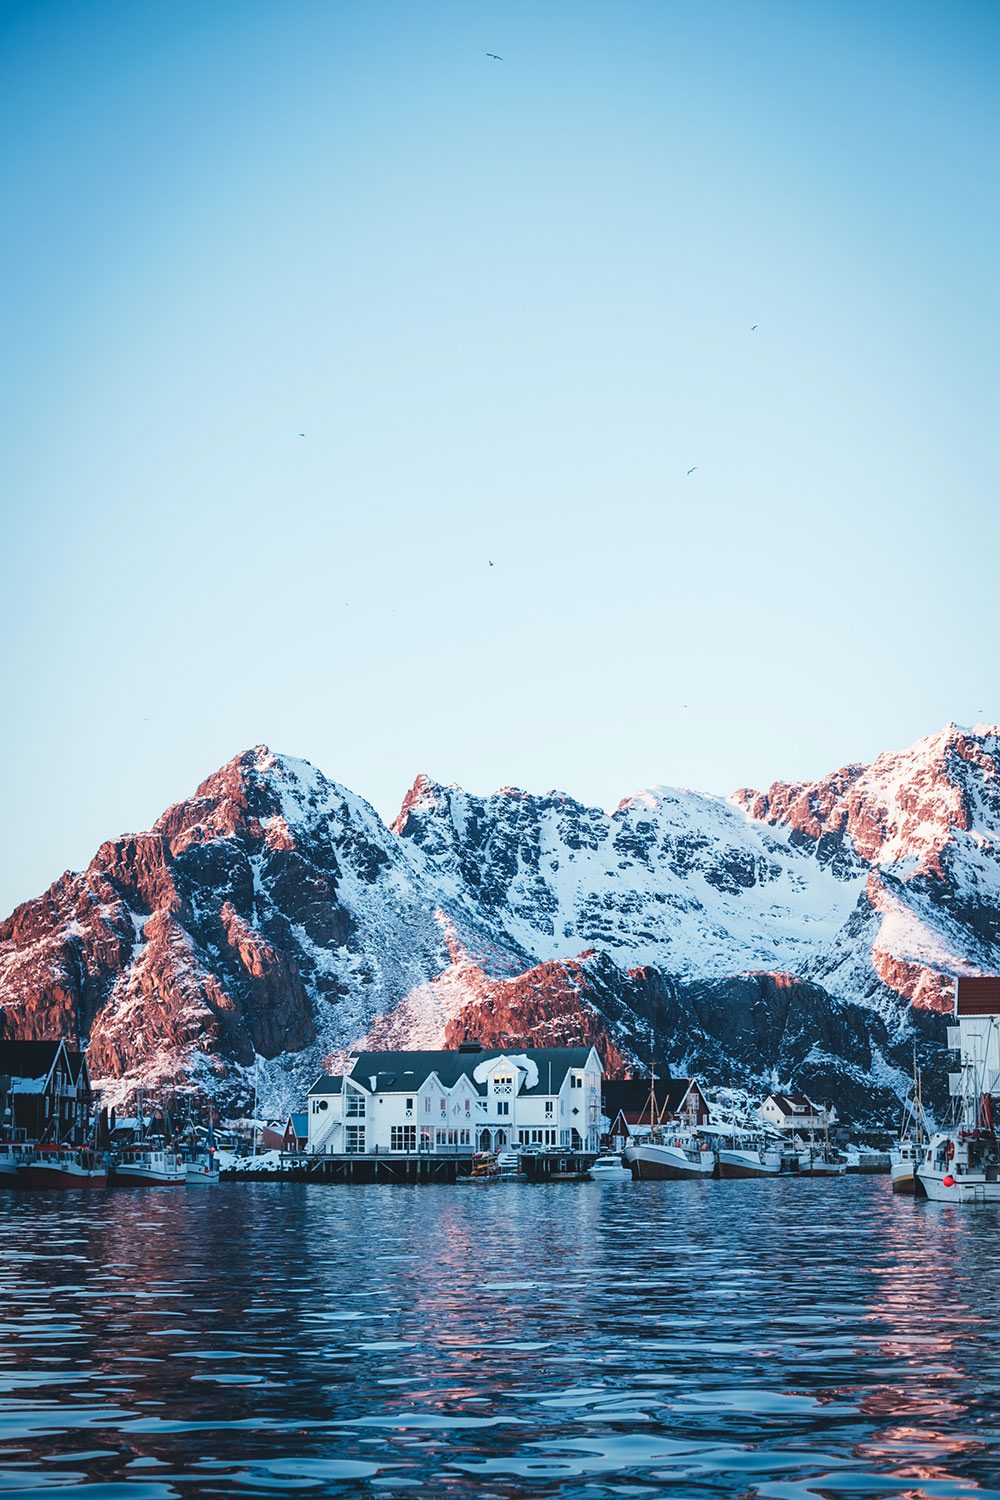 Abenteuer Lofoten - beim Skrei-Fischen in Norwegen | Pressereise mit Seafood from Norway nach Nord-Norwegen | moeyskitchen.com #skrei #lofoten #norwegen #norway #fischen #travel #foodblogger